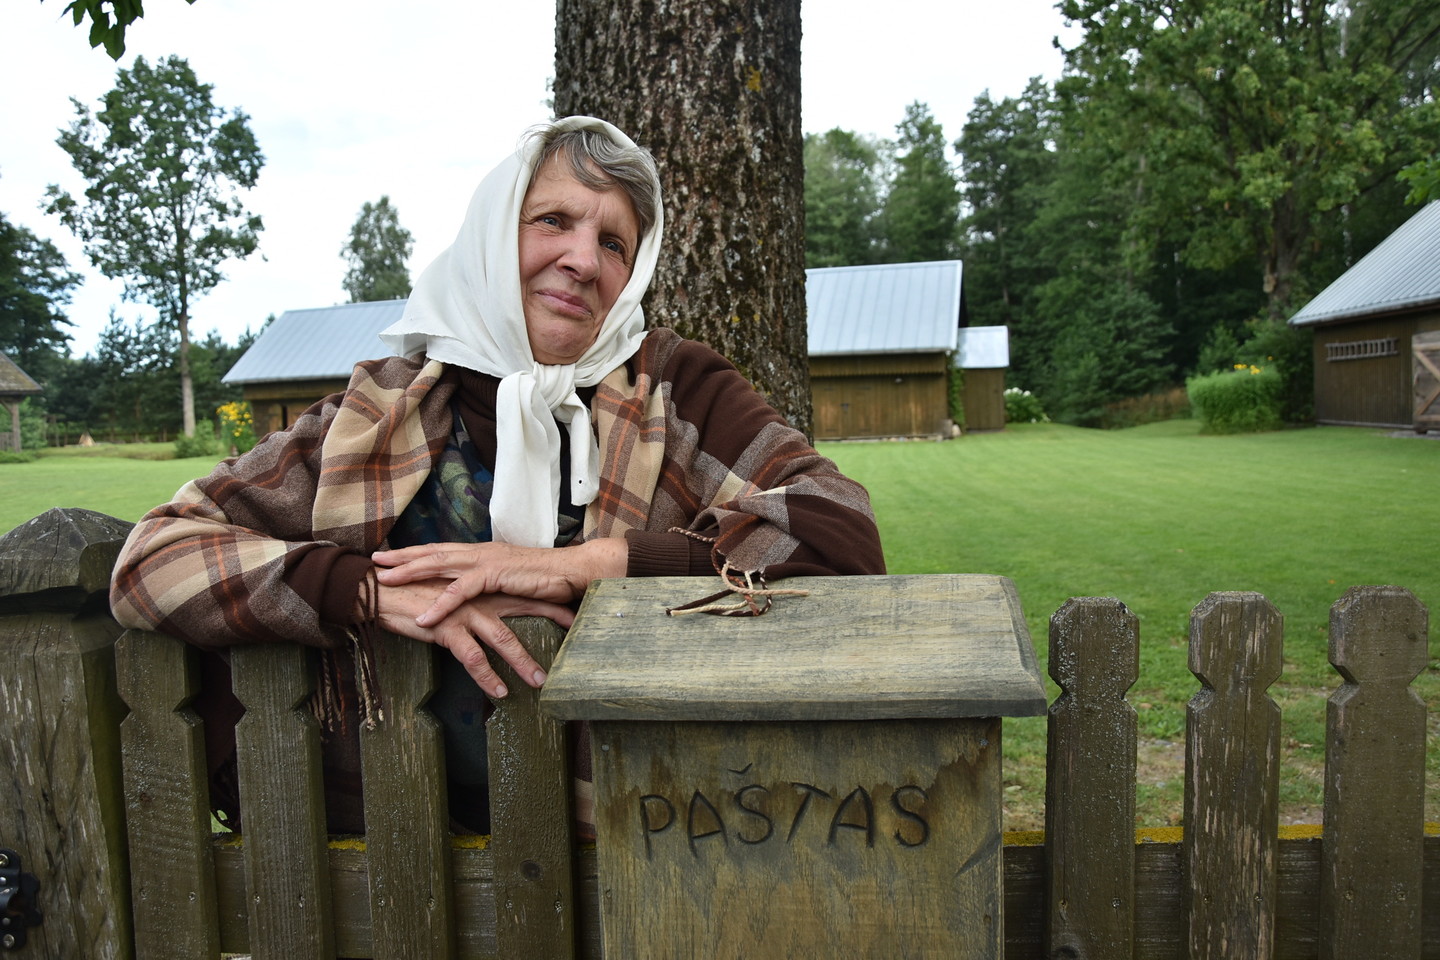  Senovinės XIX a. pabaigos etnografinės kaimo turizmo sodybos šeimininkė A.Rutkienė tikra, kad paveldu privalu dalytis su kitais. <br> A.Murauskaitės nuotr. 